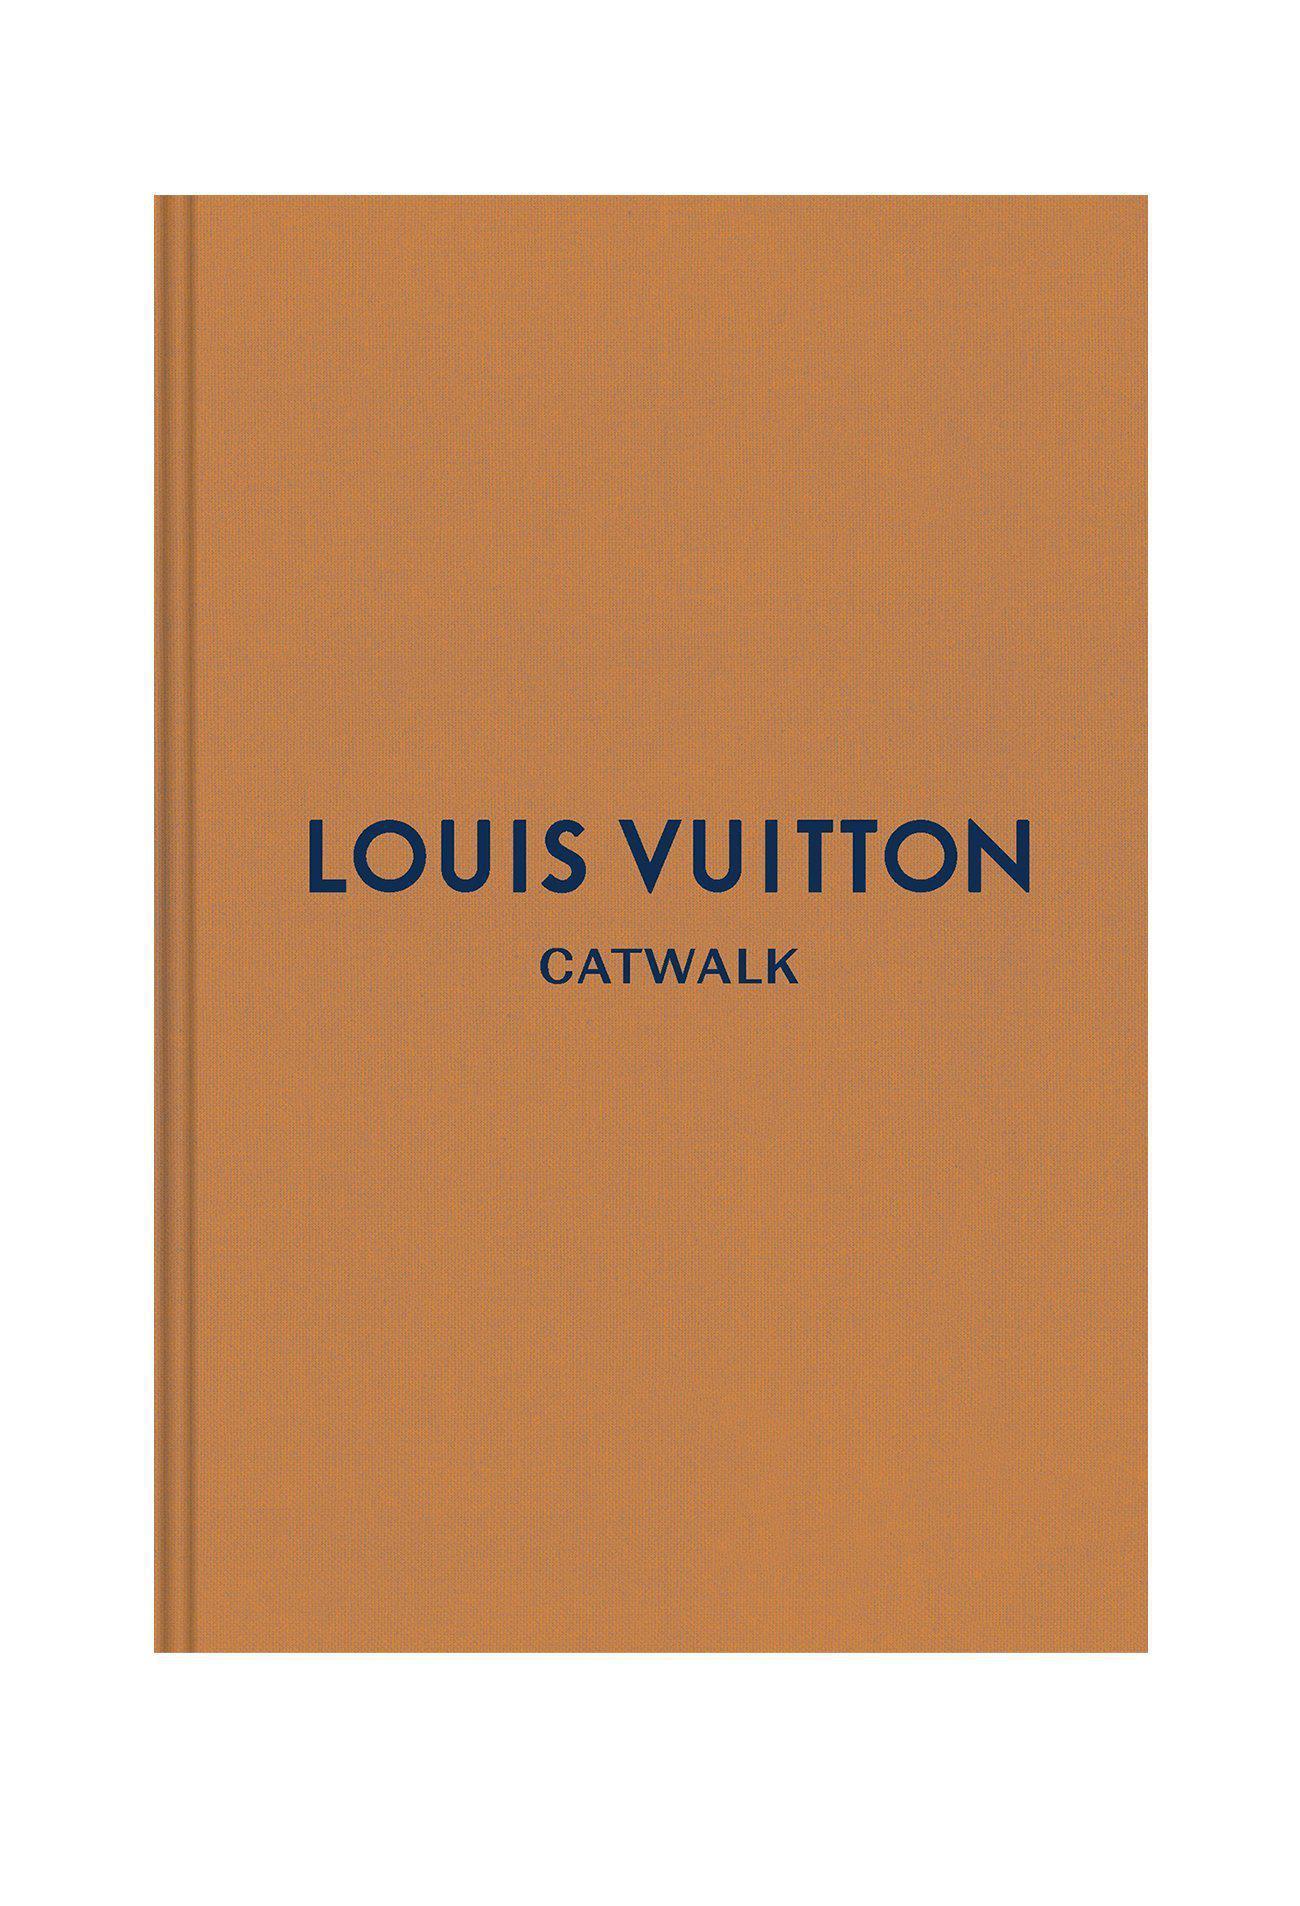 Louis Vuitton/Marc Jacobs Decorative Book